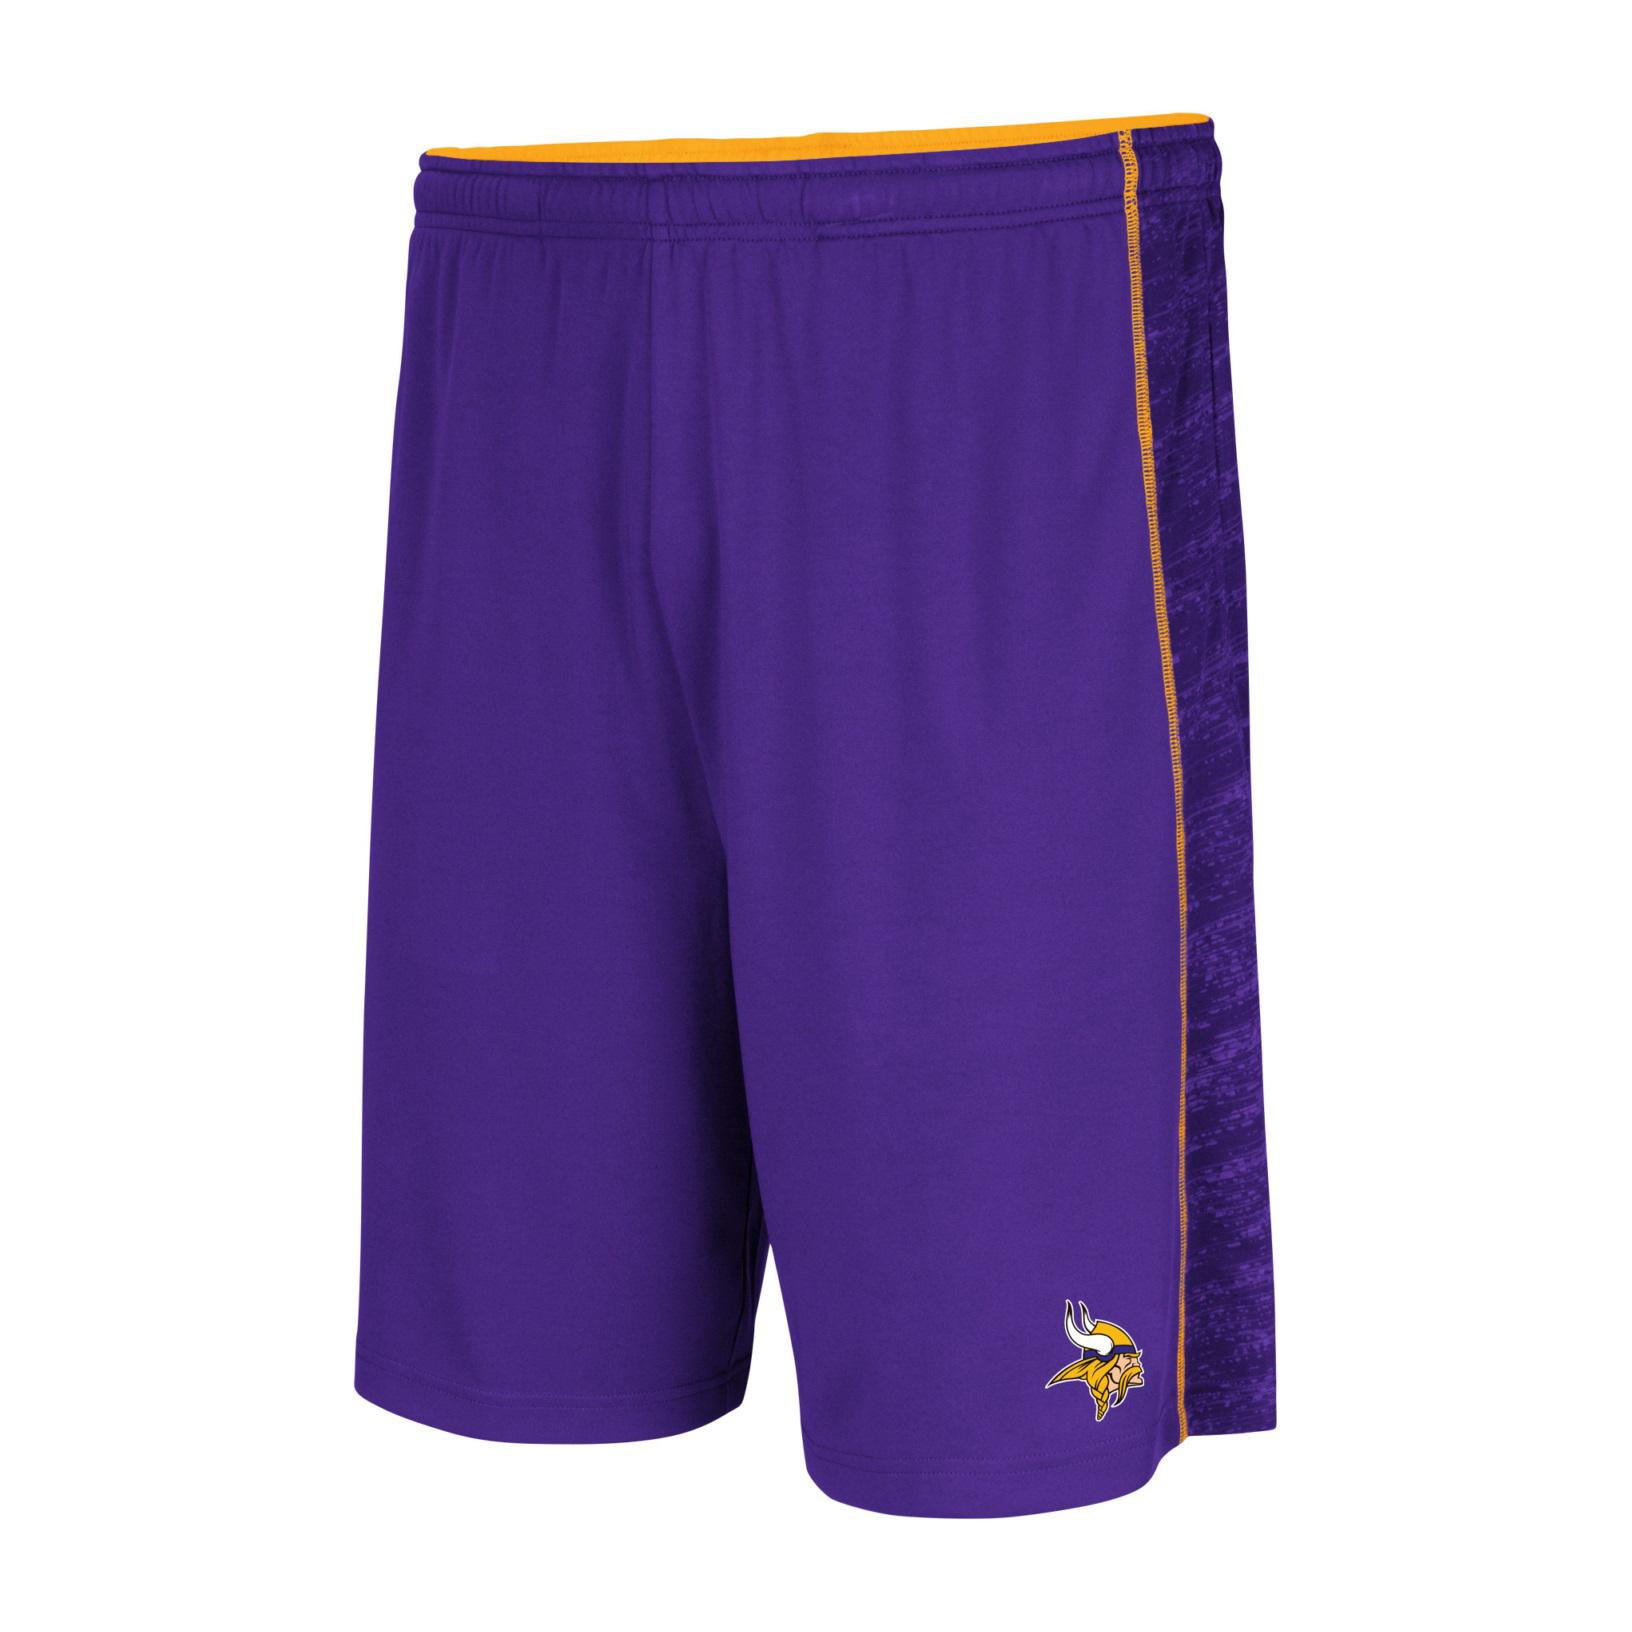 NFL Men's Athletic Shorts - Minnesota Vikings